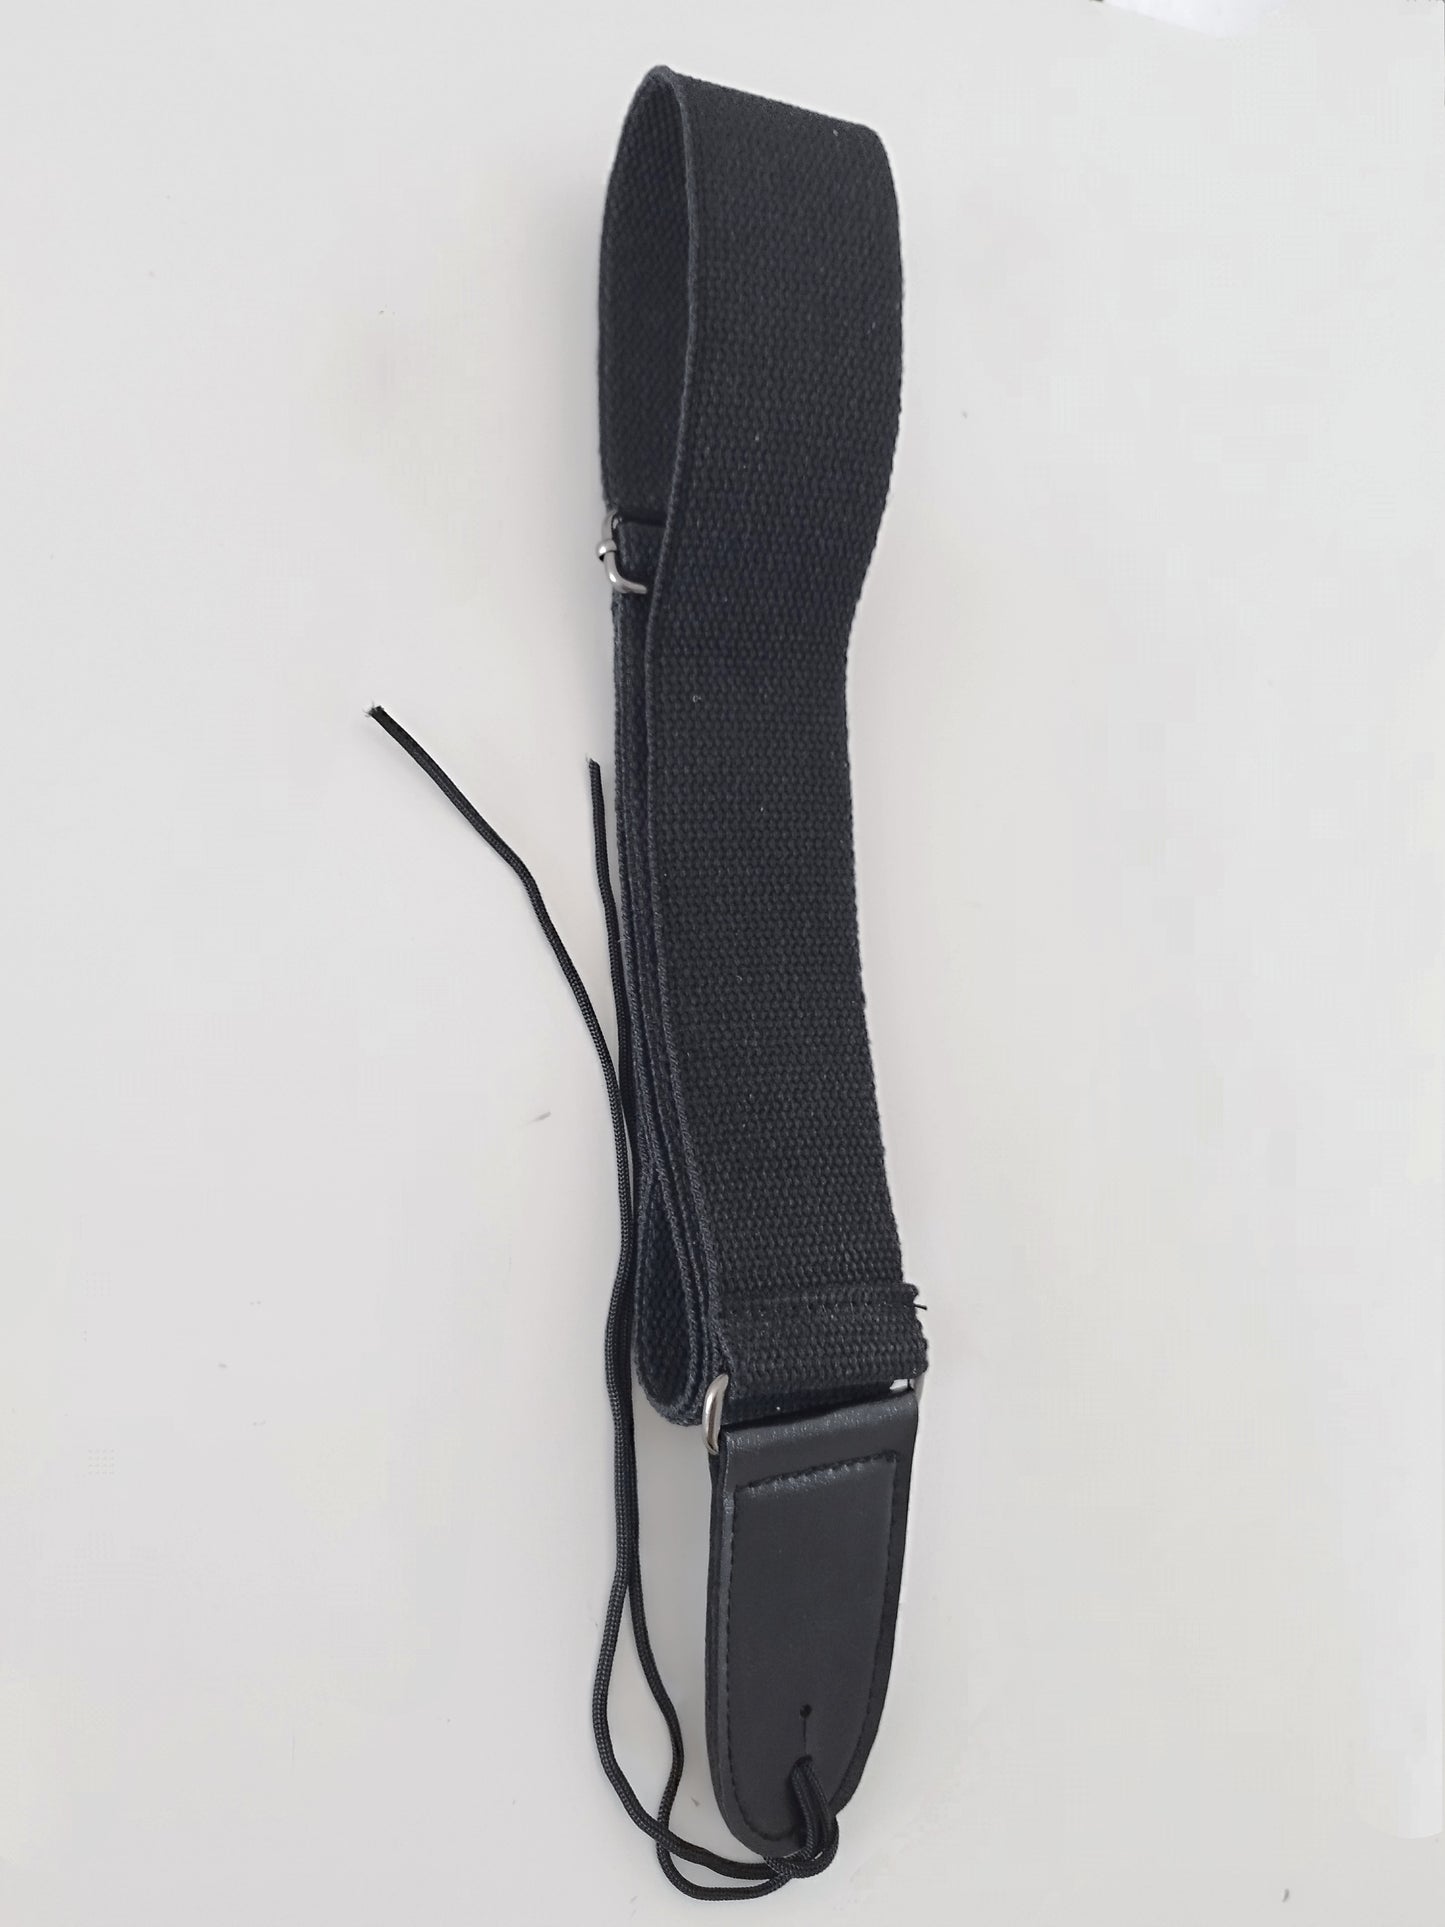 Verstellbare Umhängetasche mit Gitarrengurt aus weicher Baumwolle, Breite 5 cm.